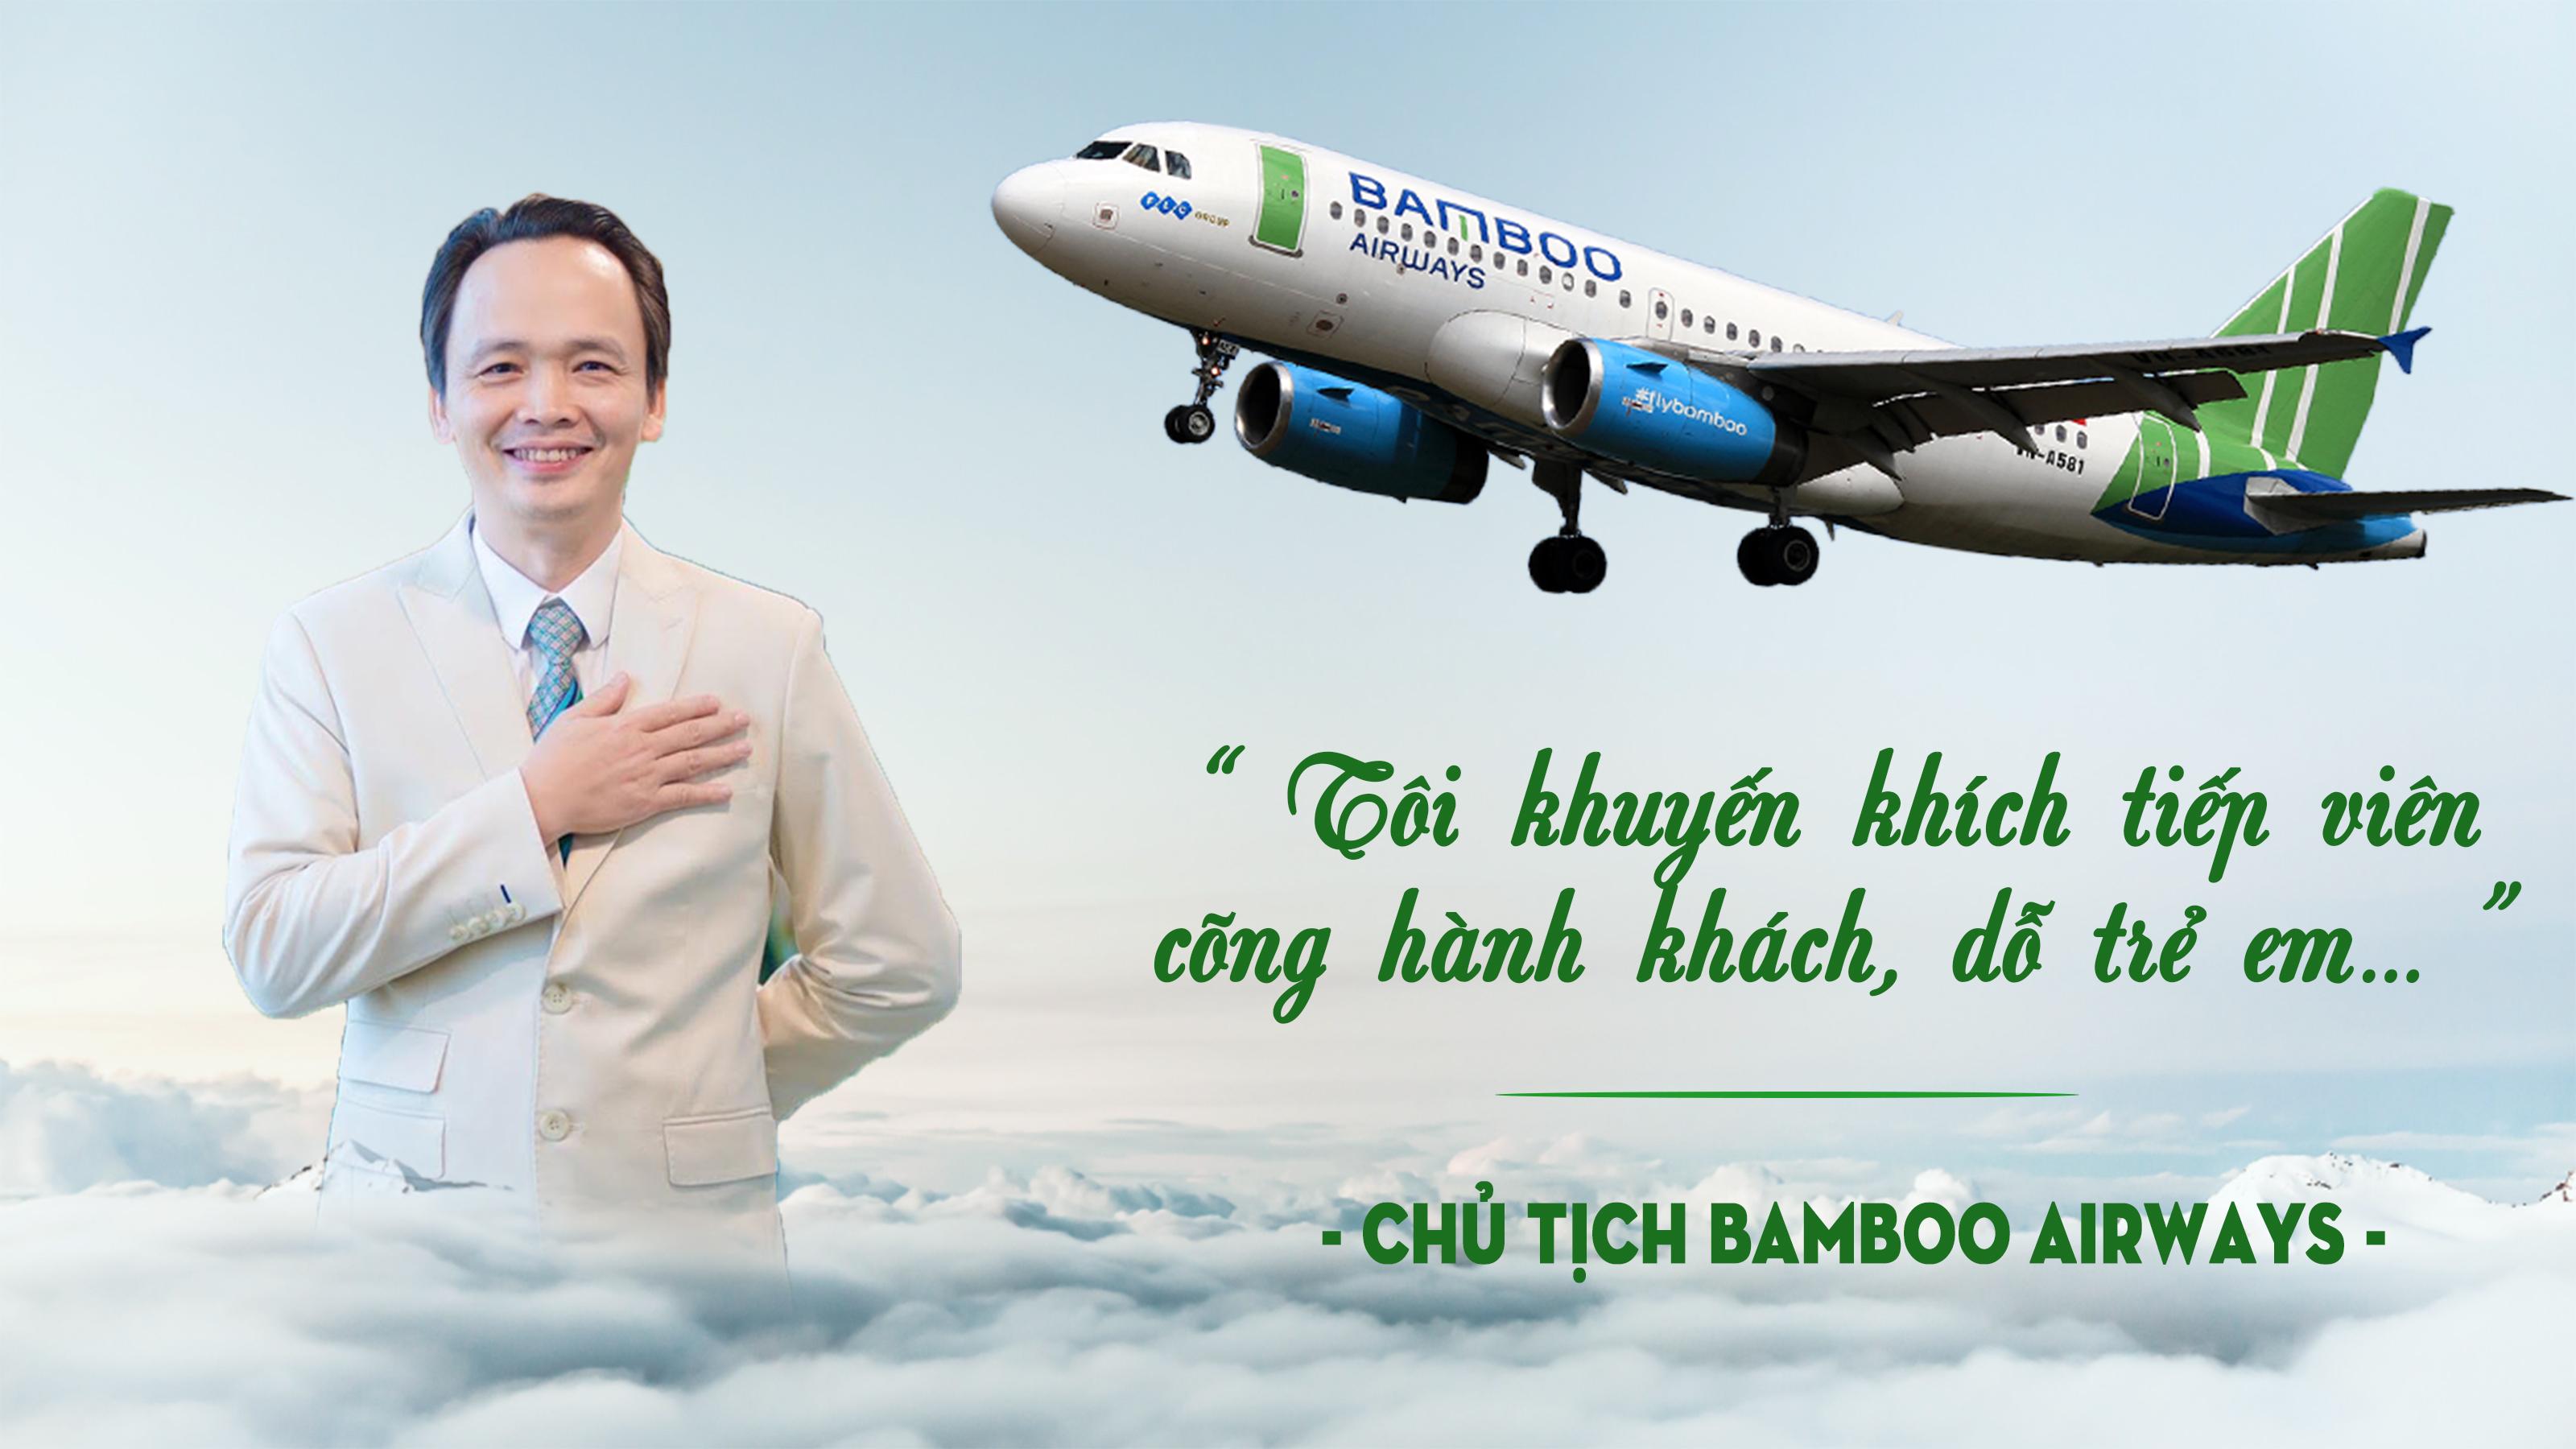 Chủ tịch Bamboo Airways: Tôi khuyến khích tiếp viên cõng hành khách, dỗ trẻ em…